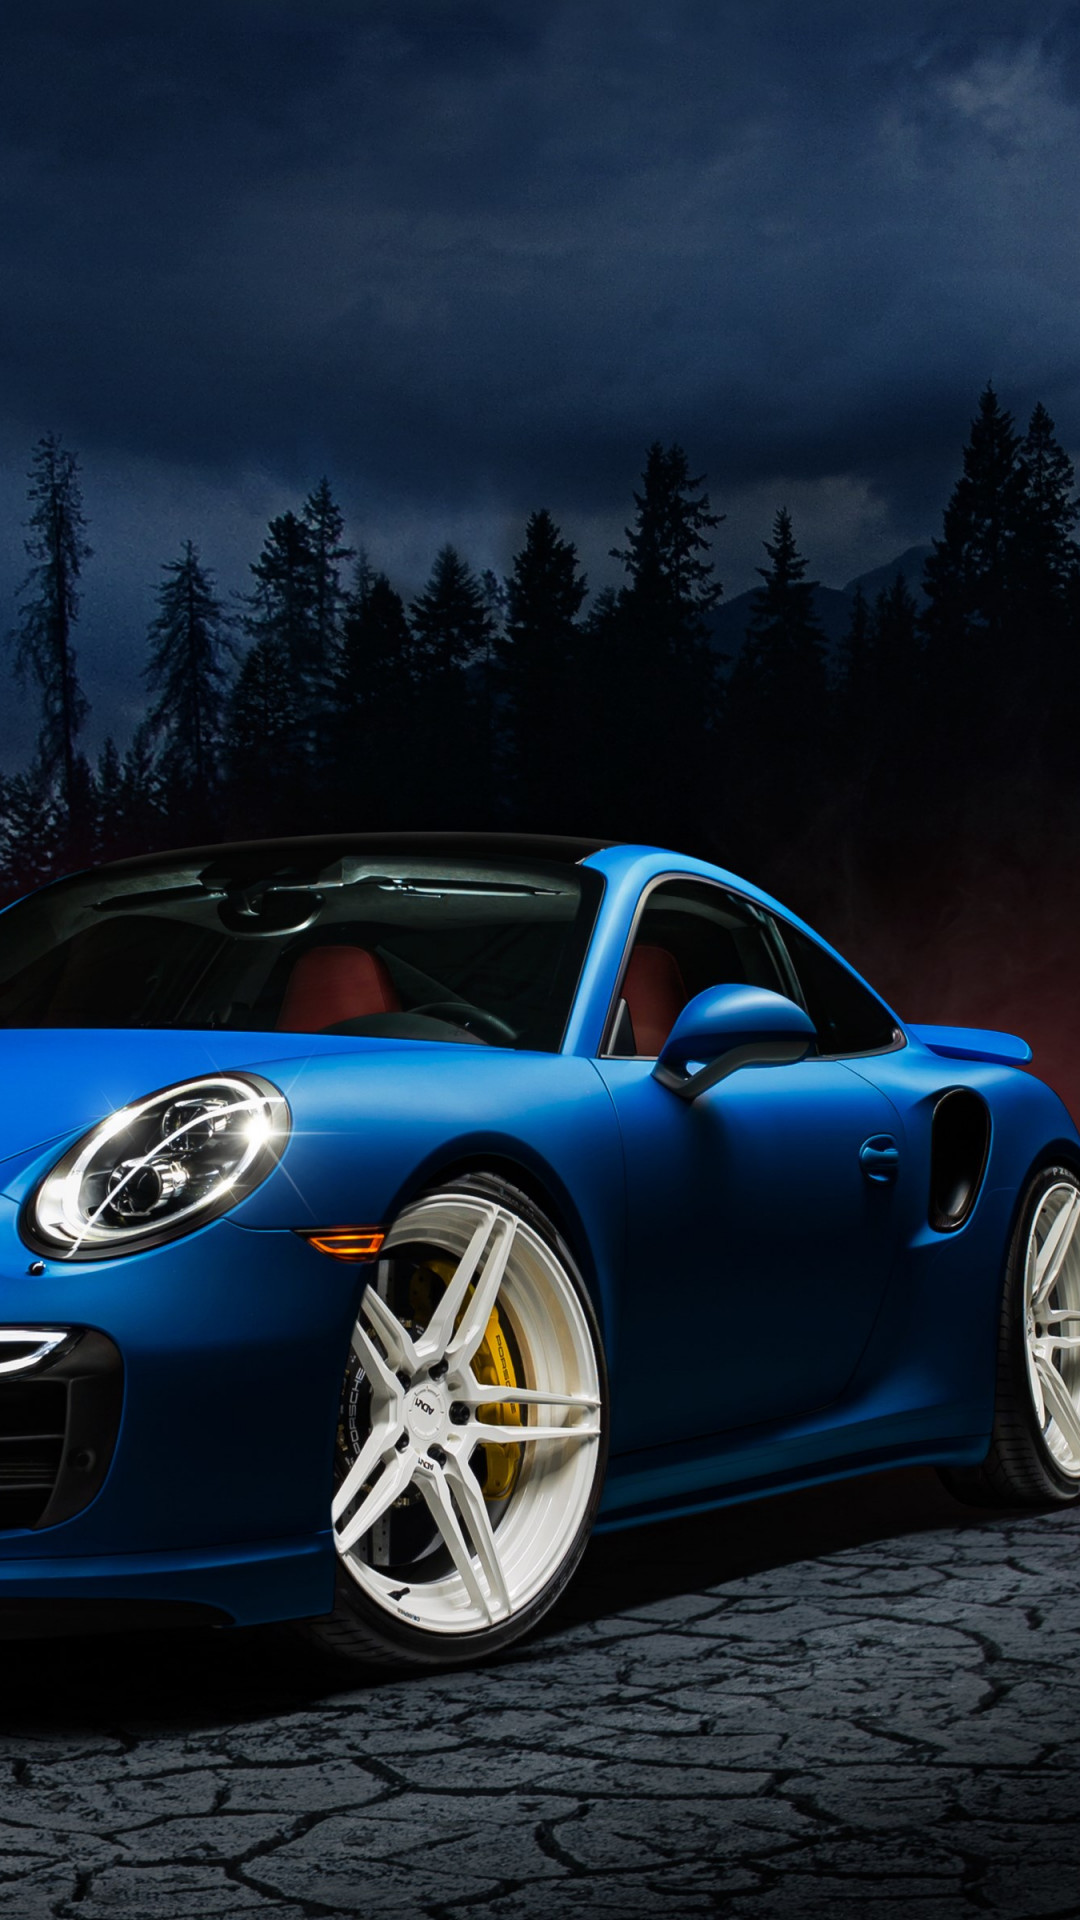 Porsche 911 blue wallpaper 1080x1920